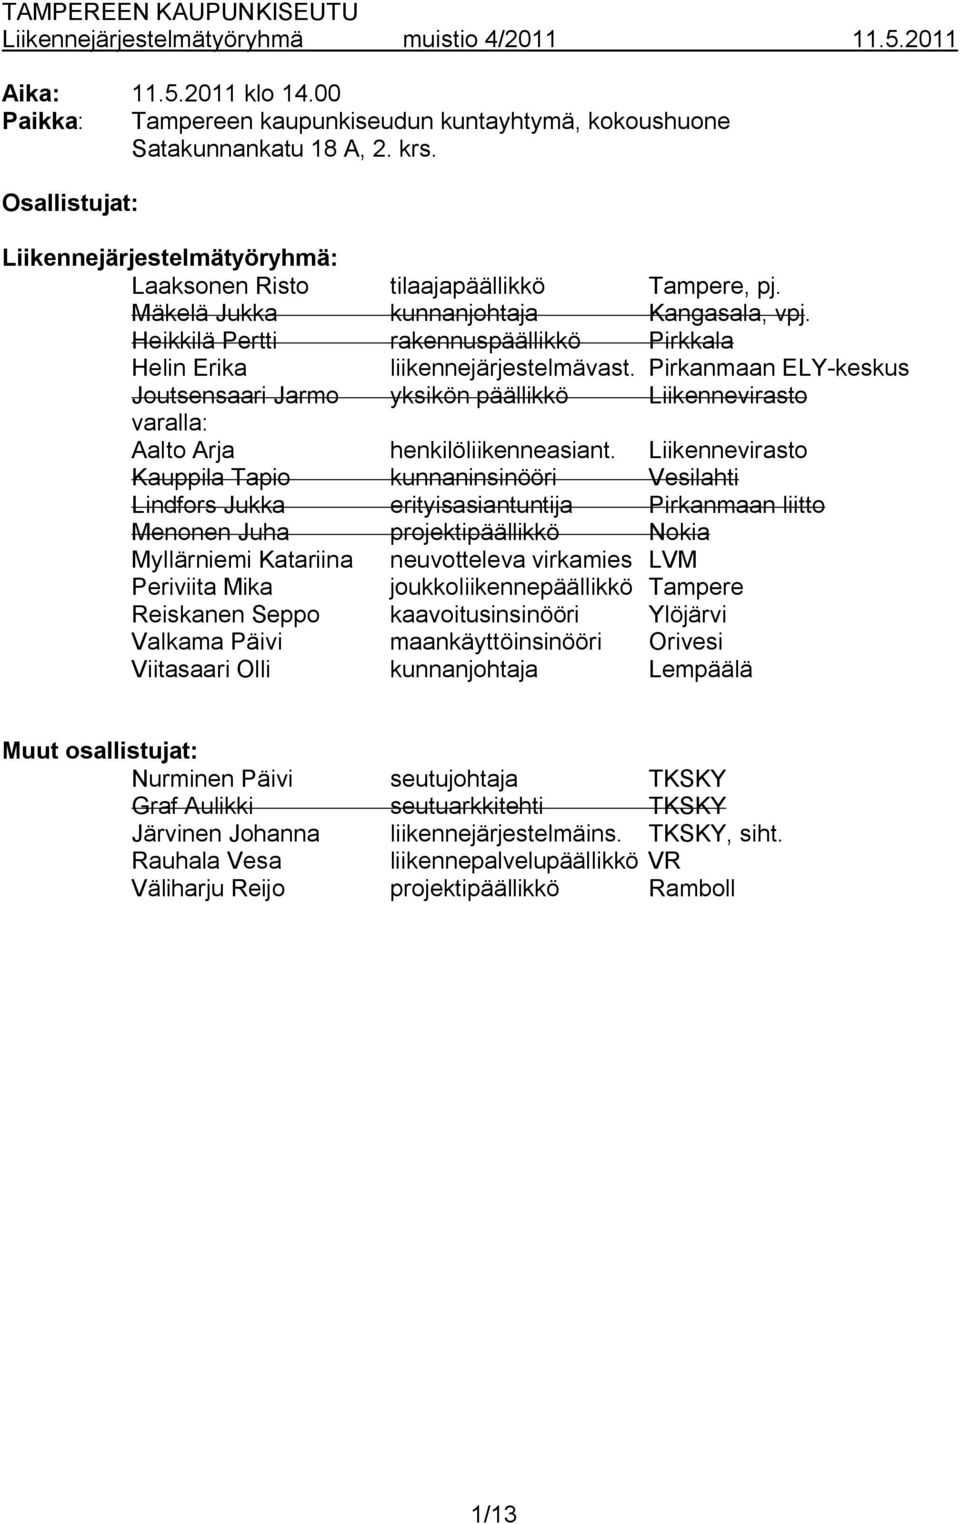 Heikkilä Pertti rakennuspäällikkö Pirkkala Helin Erika liikennejärjestelmävast. Pirkanmaan ELY keskus Joutsensaari Jarmo yksikön päällikkö Liikennevirasto varalla: Aalto Arja henkilöliikenneasiant.